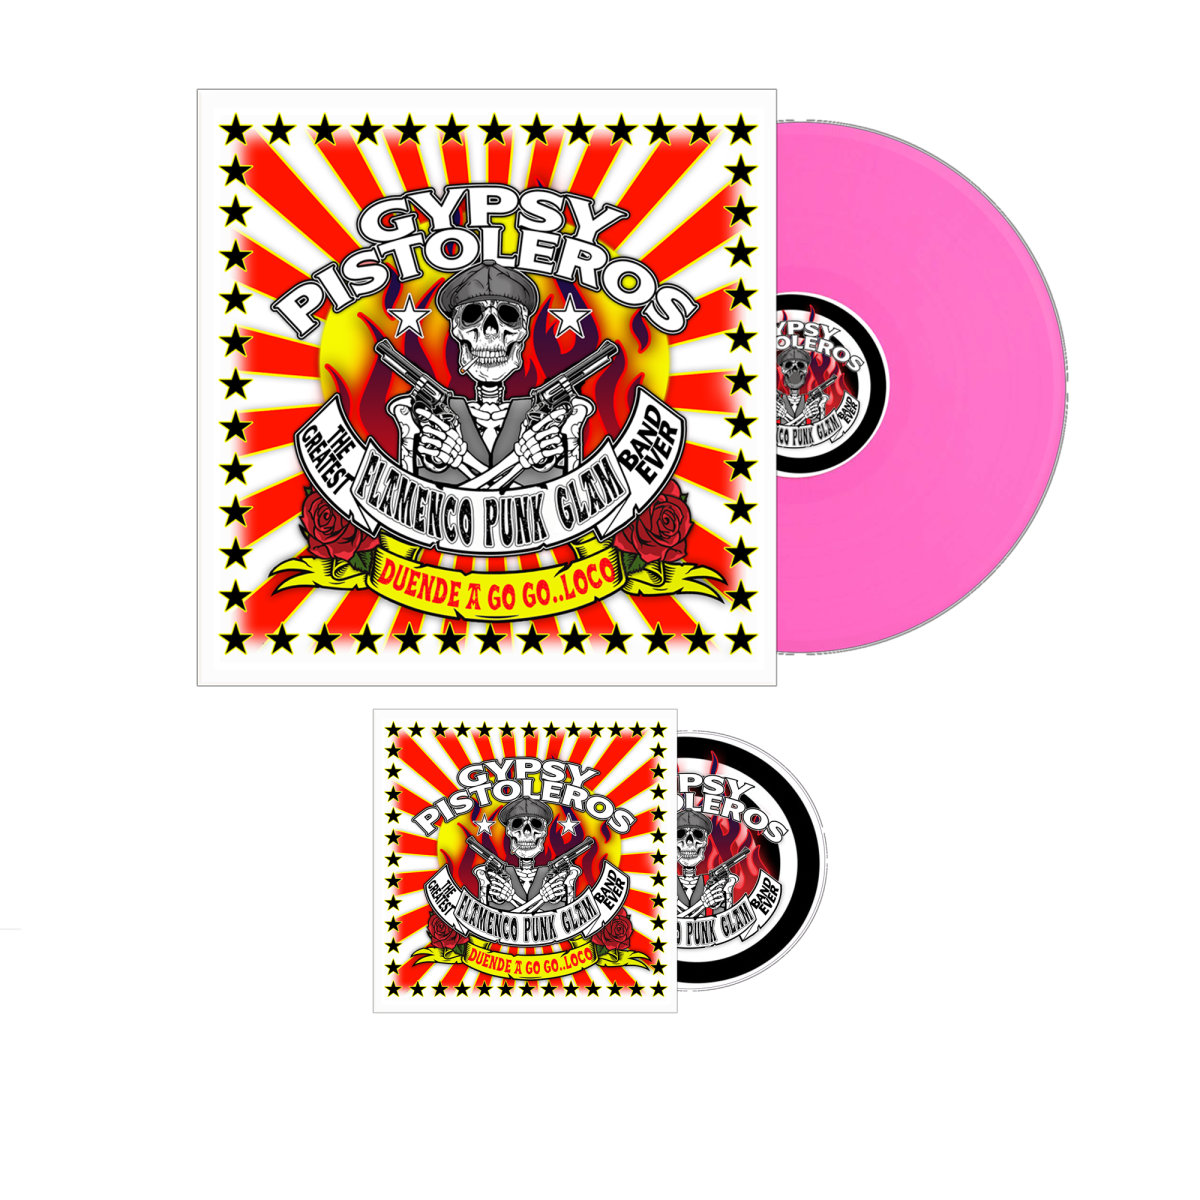 Gypsy Pistoleros "Duende a Go Go Loco" Pink Vinyl & Signed CD